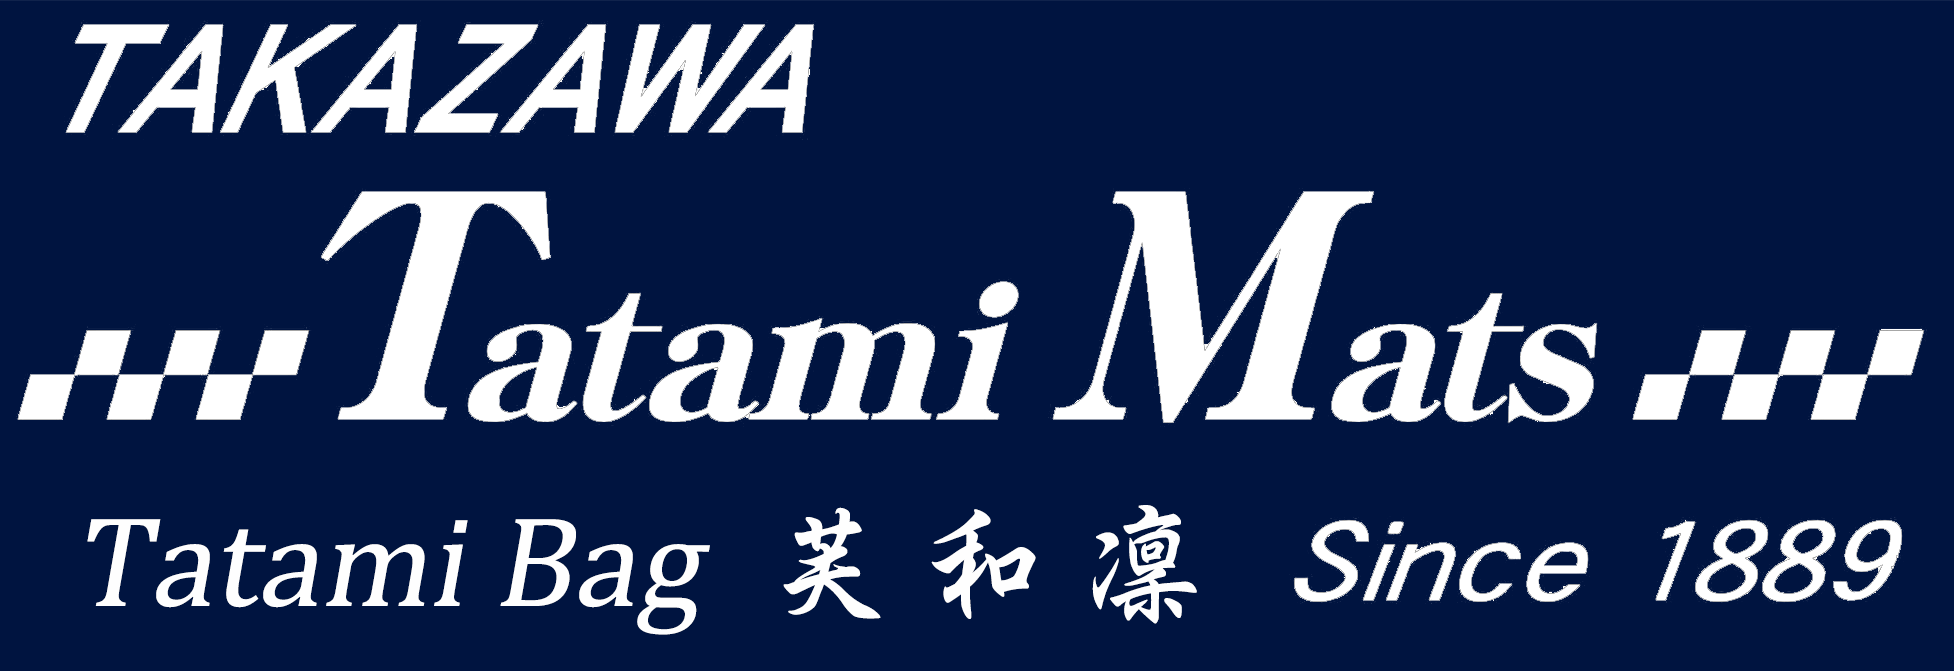 takazawa-logo2